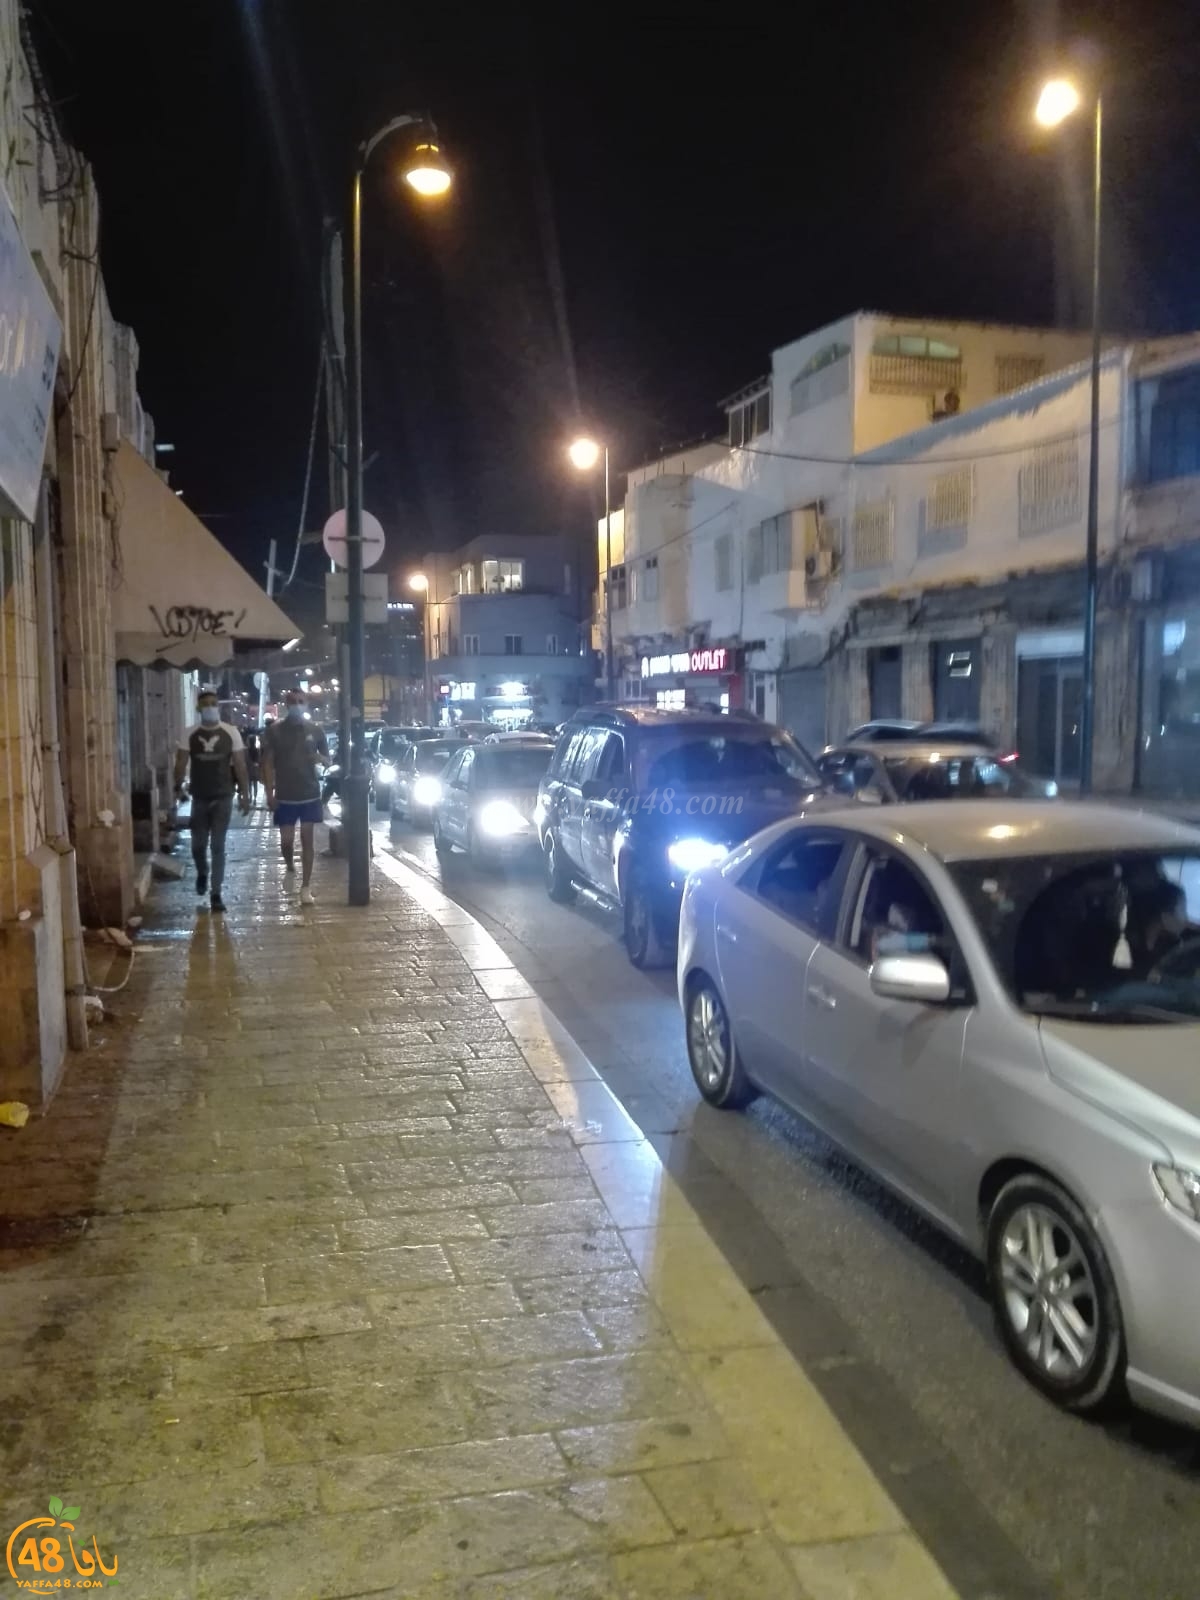 يافا: إقبال كبير من الزوار وأزمة مروريّة خانقة تشهدها المدينة